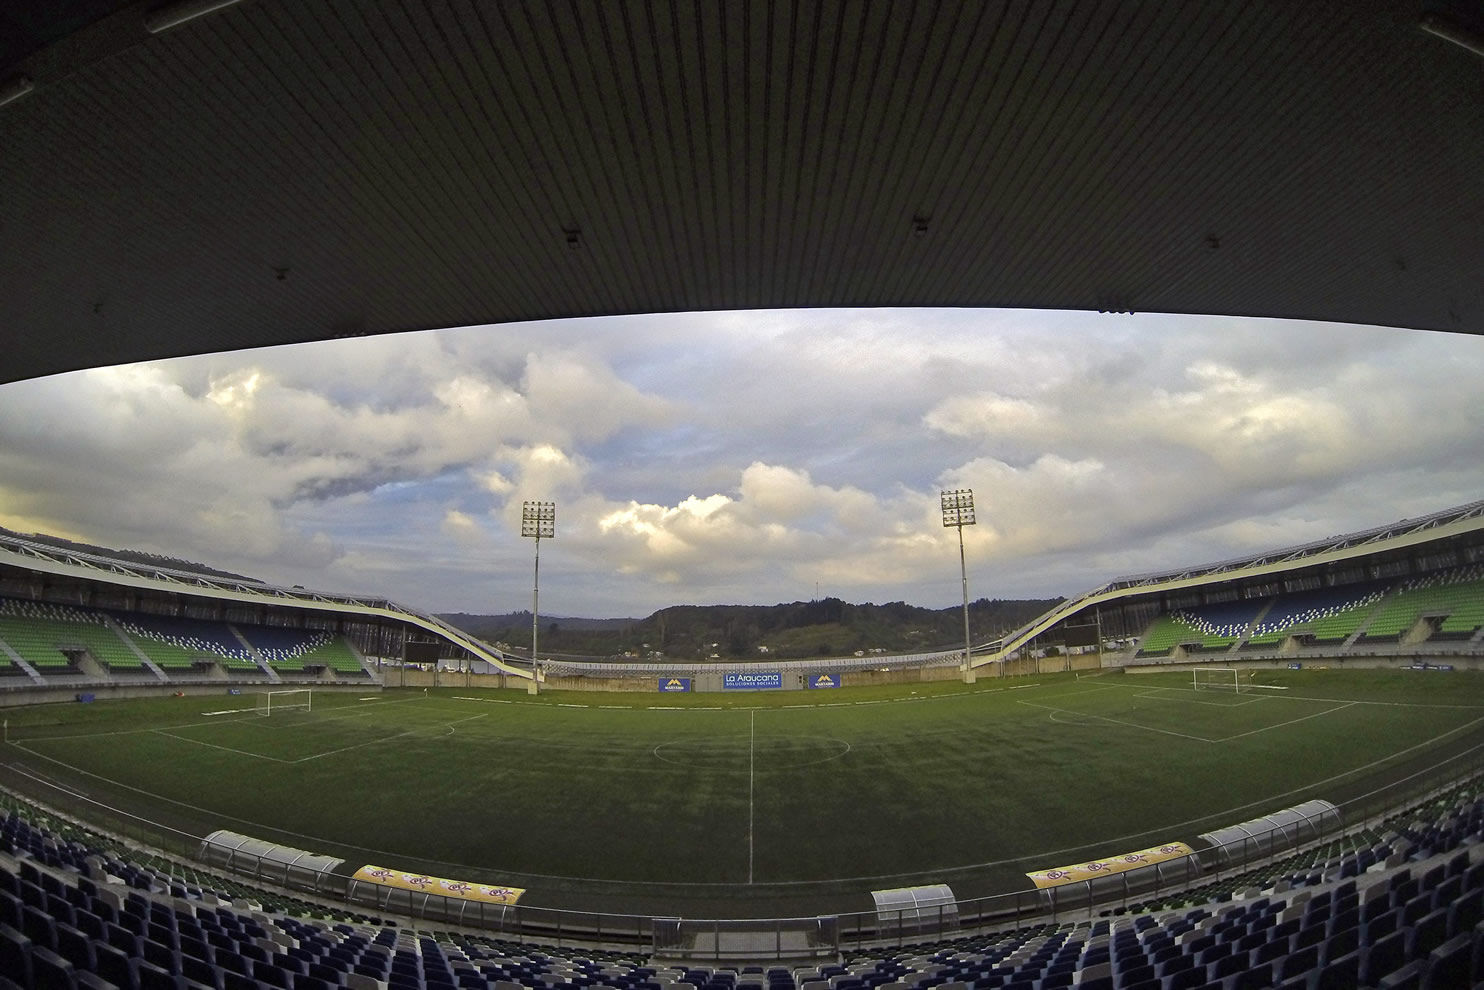 EstadioRegionaldeChinquihue-钦基韦地区体育场-2-EstadioRegionaldeChinquihue-